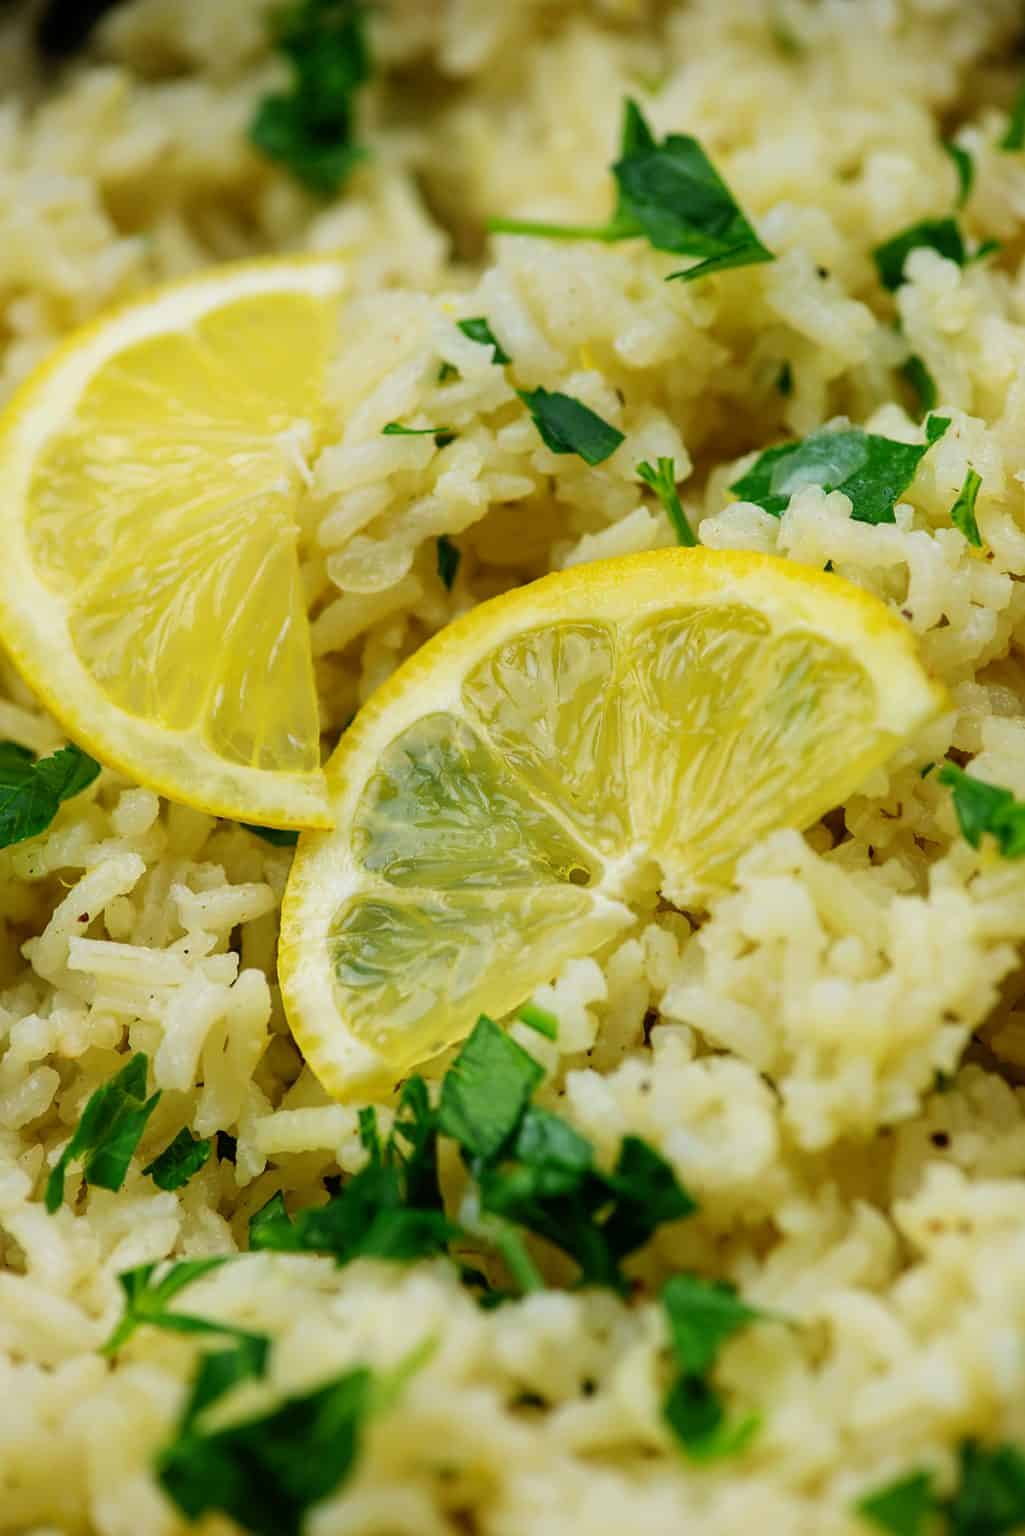 Greek Lemon Rice